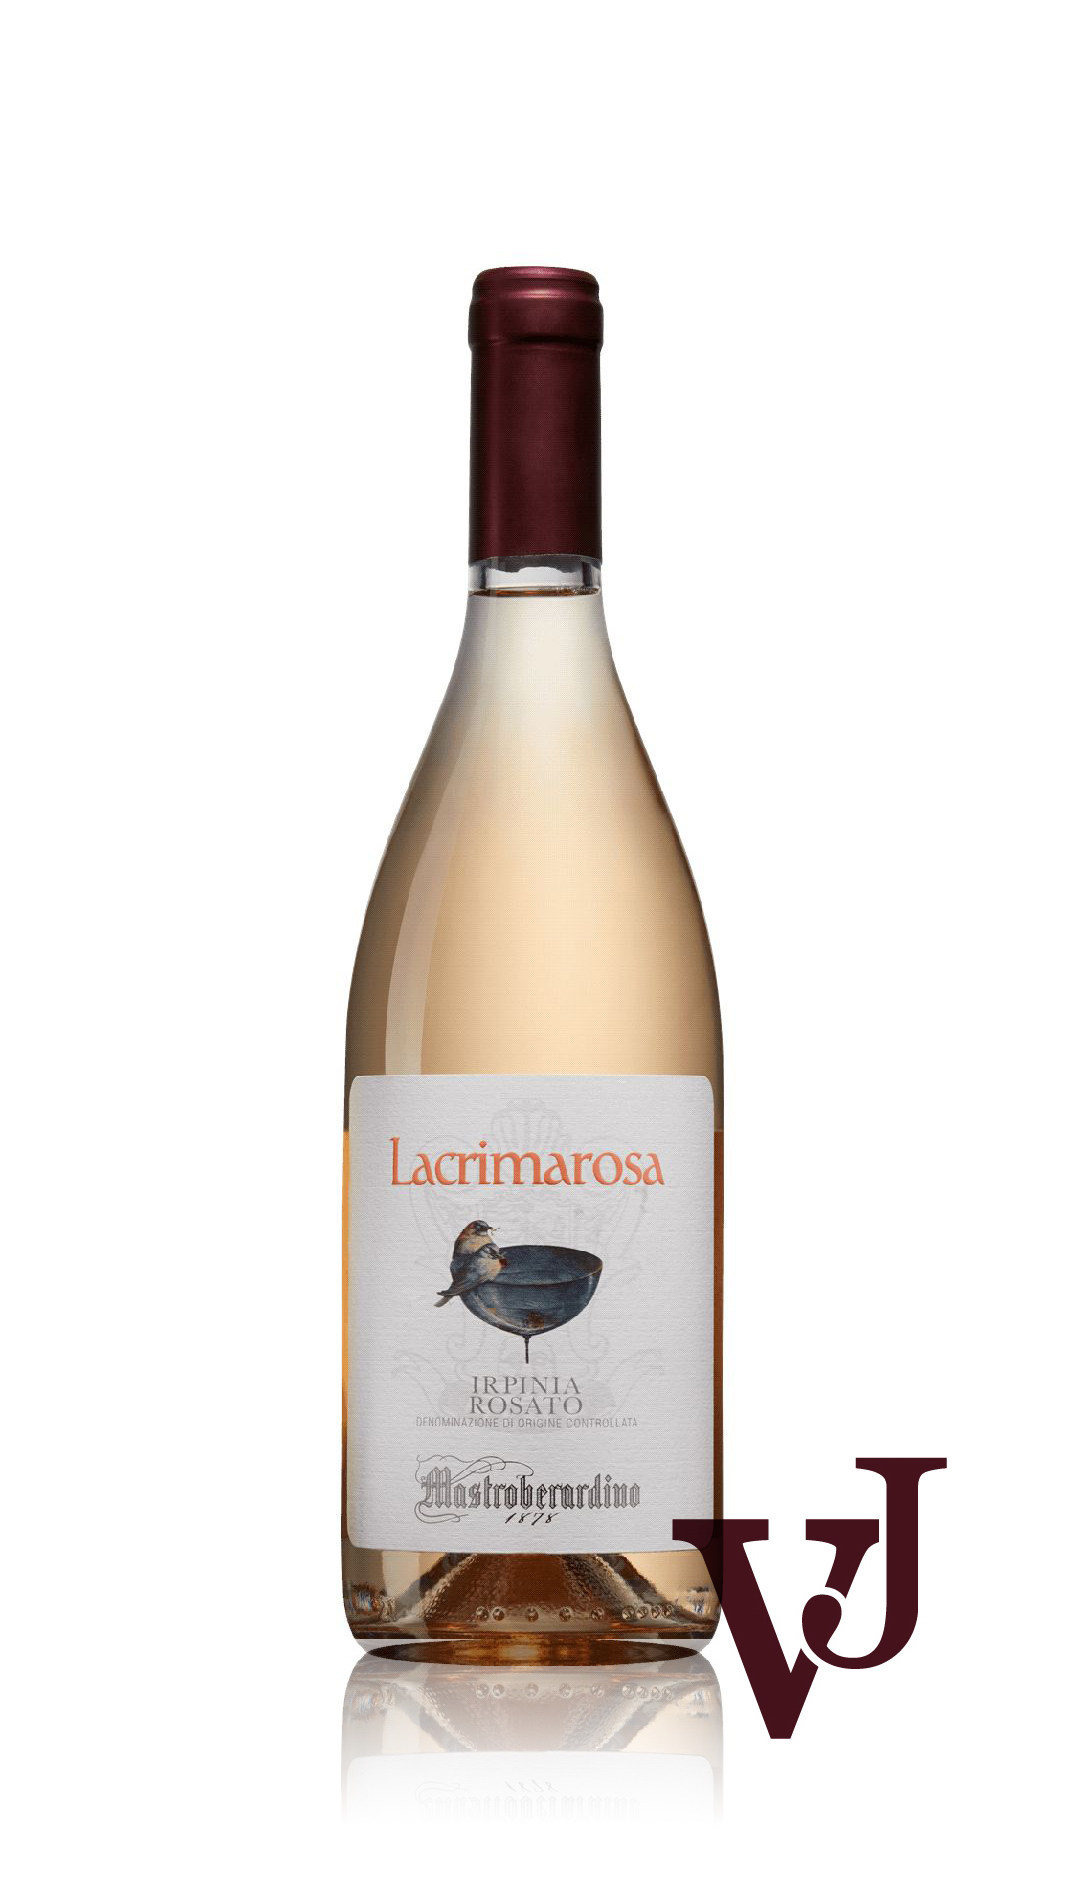 Rosé Vin - Lacrimarosa Mastroberardino artikel nummer 9124801 från producenten Mastroberardino från området Italien